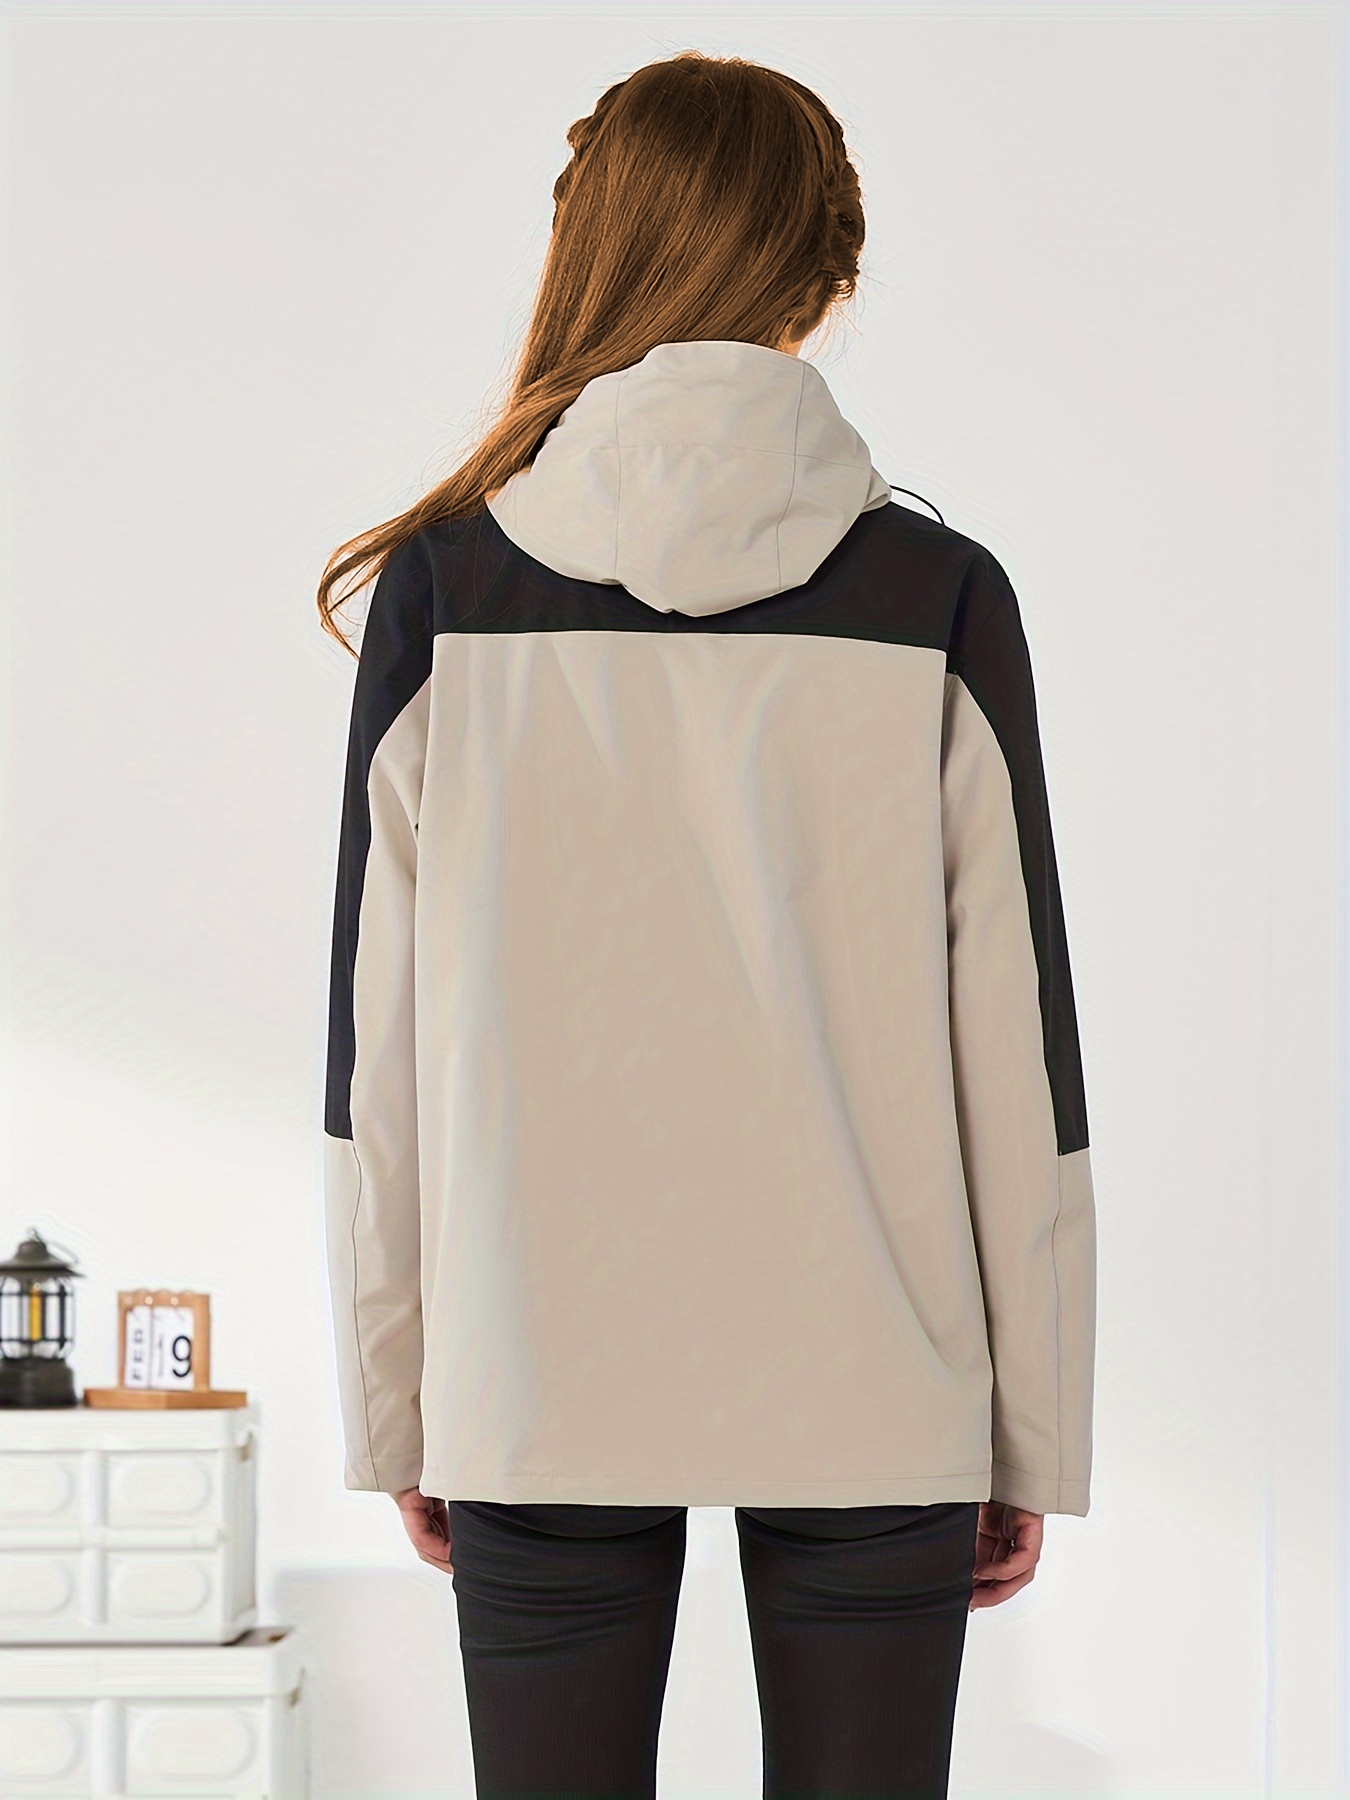 DEBX™ Late autumn/Winter Windproof Waterproof Warm Jacket